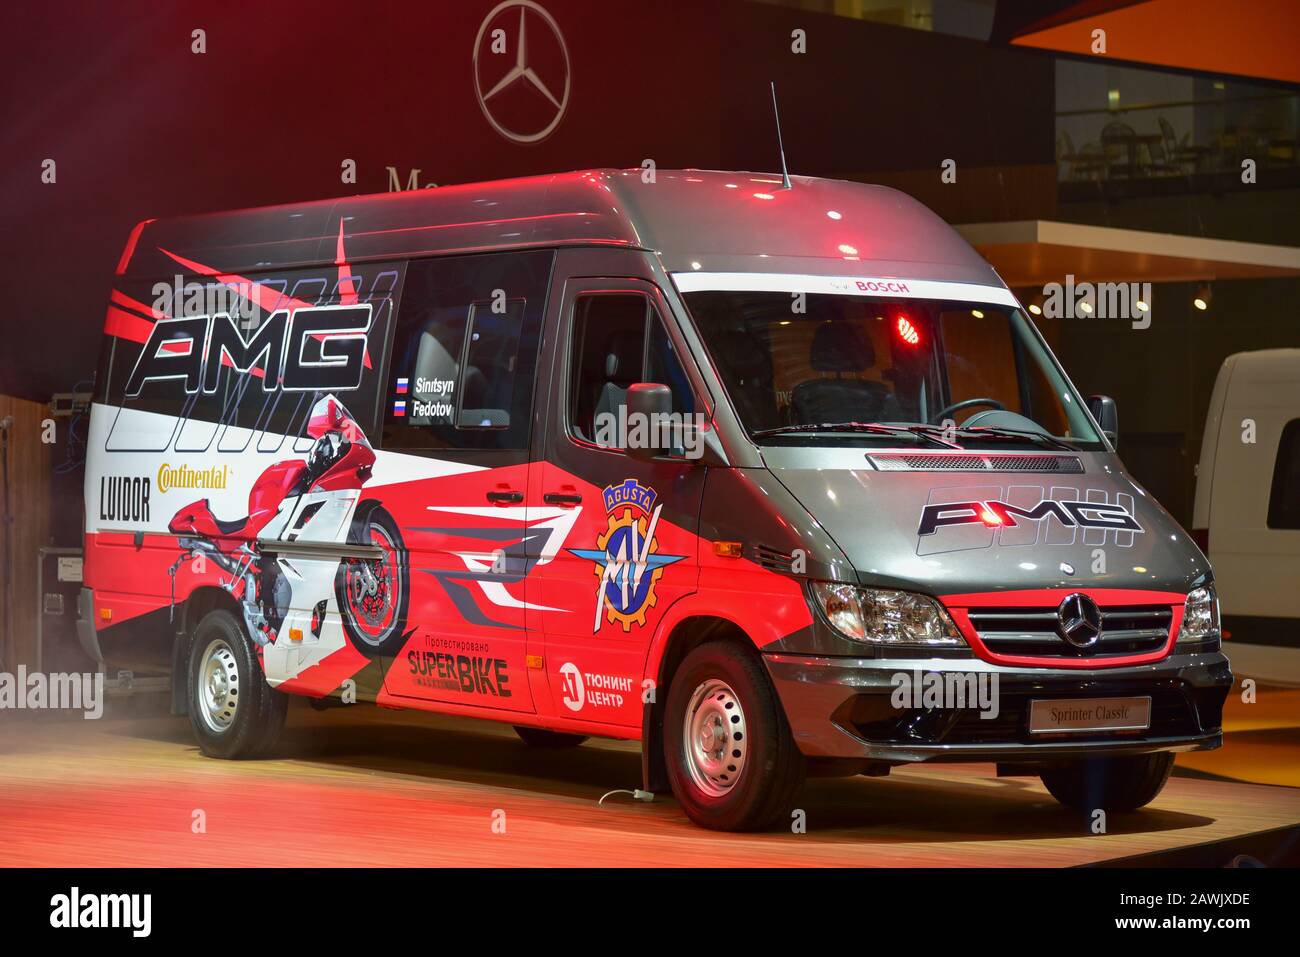 Benz sprinter immagini e fotografie stock ad alta risoluzione - Alamy